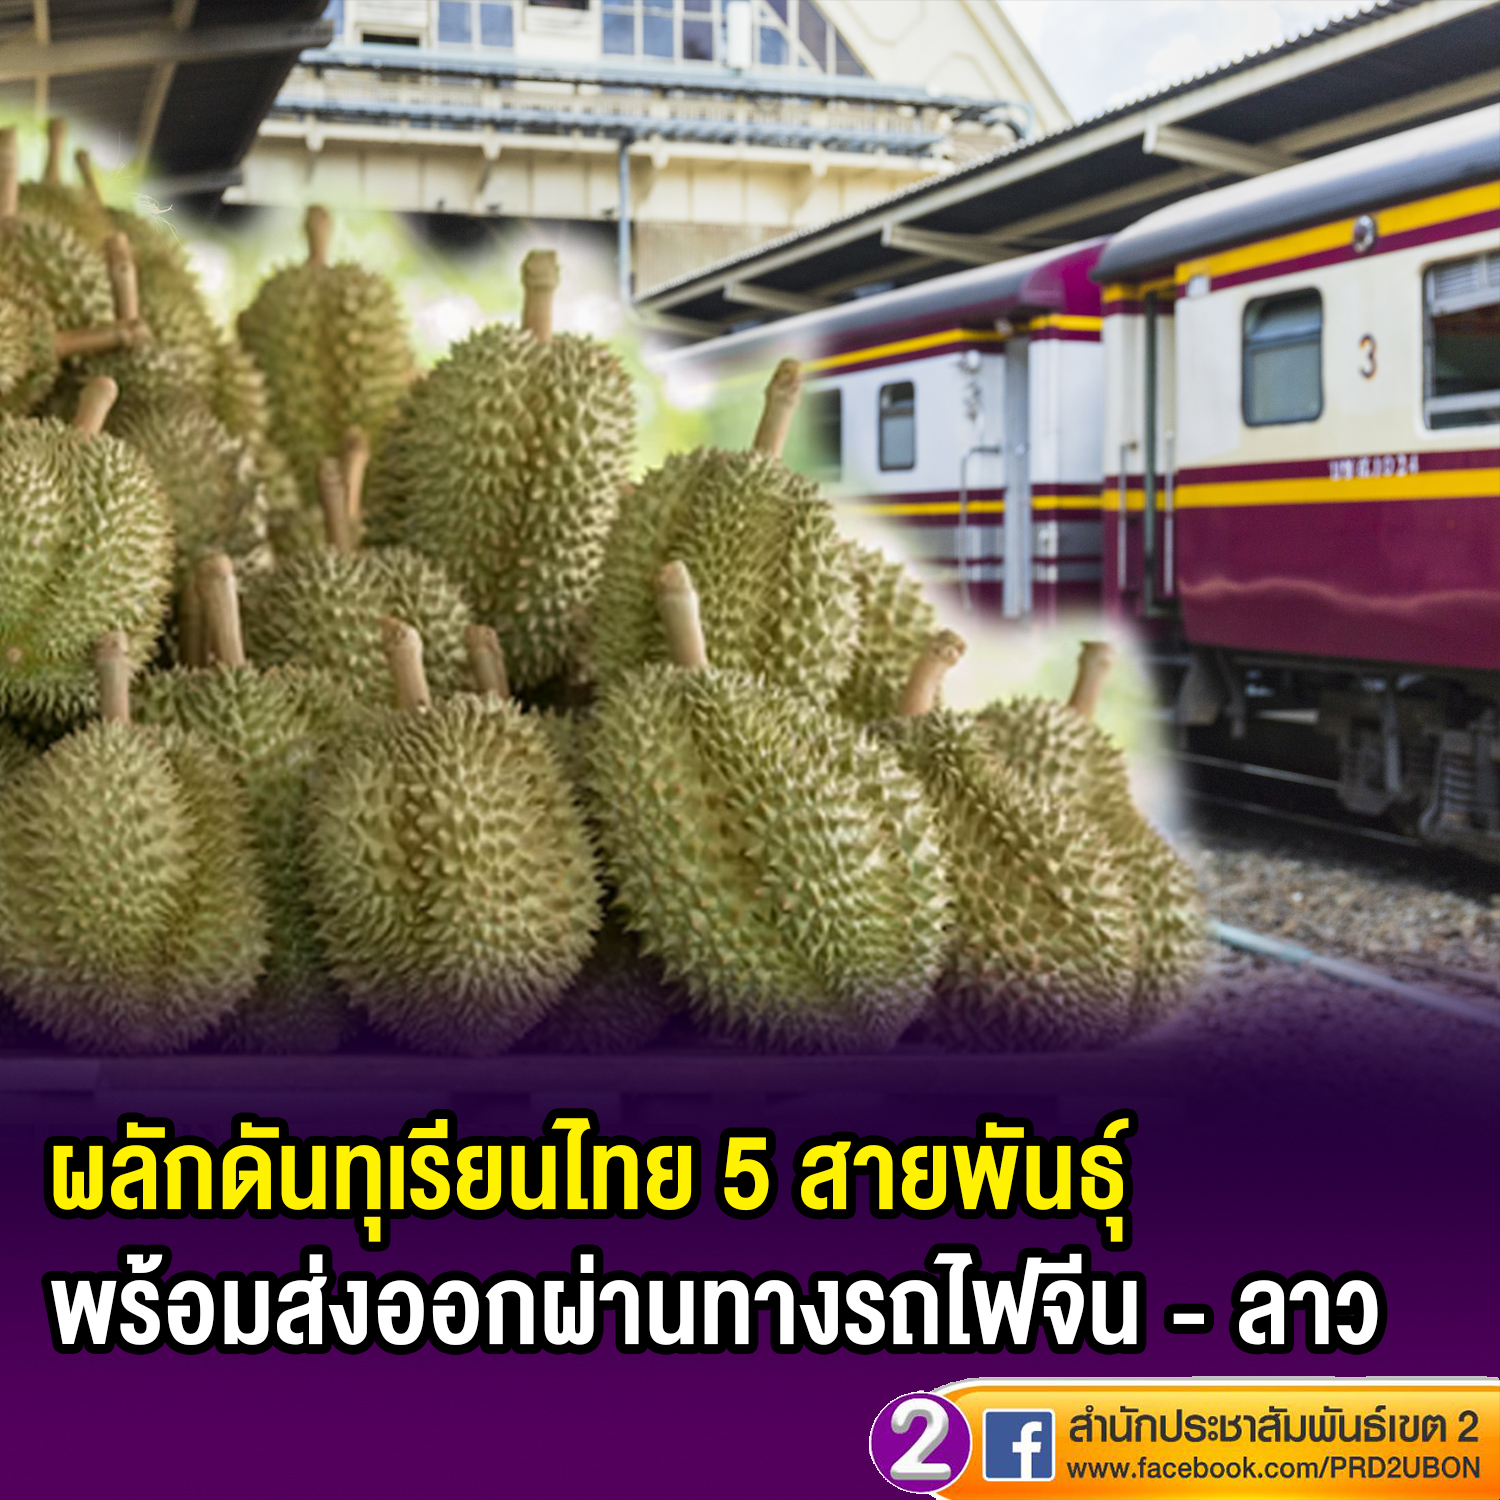 💥หน่วยงานภาครัฐ – เอกชน ผลักดันทุเรียนไทย 5 สายพันธุ์ พร้อมส่งเสริมการส่งออกผ่านทางรถไฟจีน - ลาว